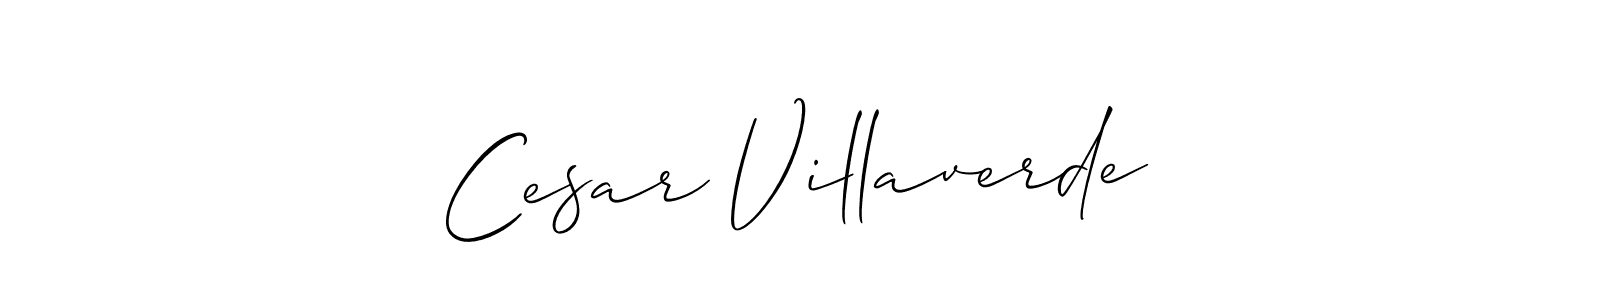 How to make Cesar Villaverde signature? Allison_Script is a professional autograph style. Create handwritten signature for Cesar Villaverde name. Cesar Villaverde signature style 2 images and pictures png